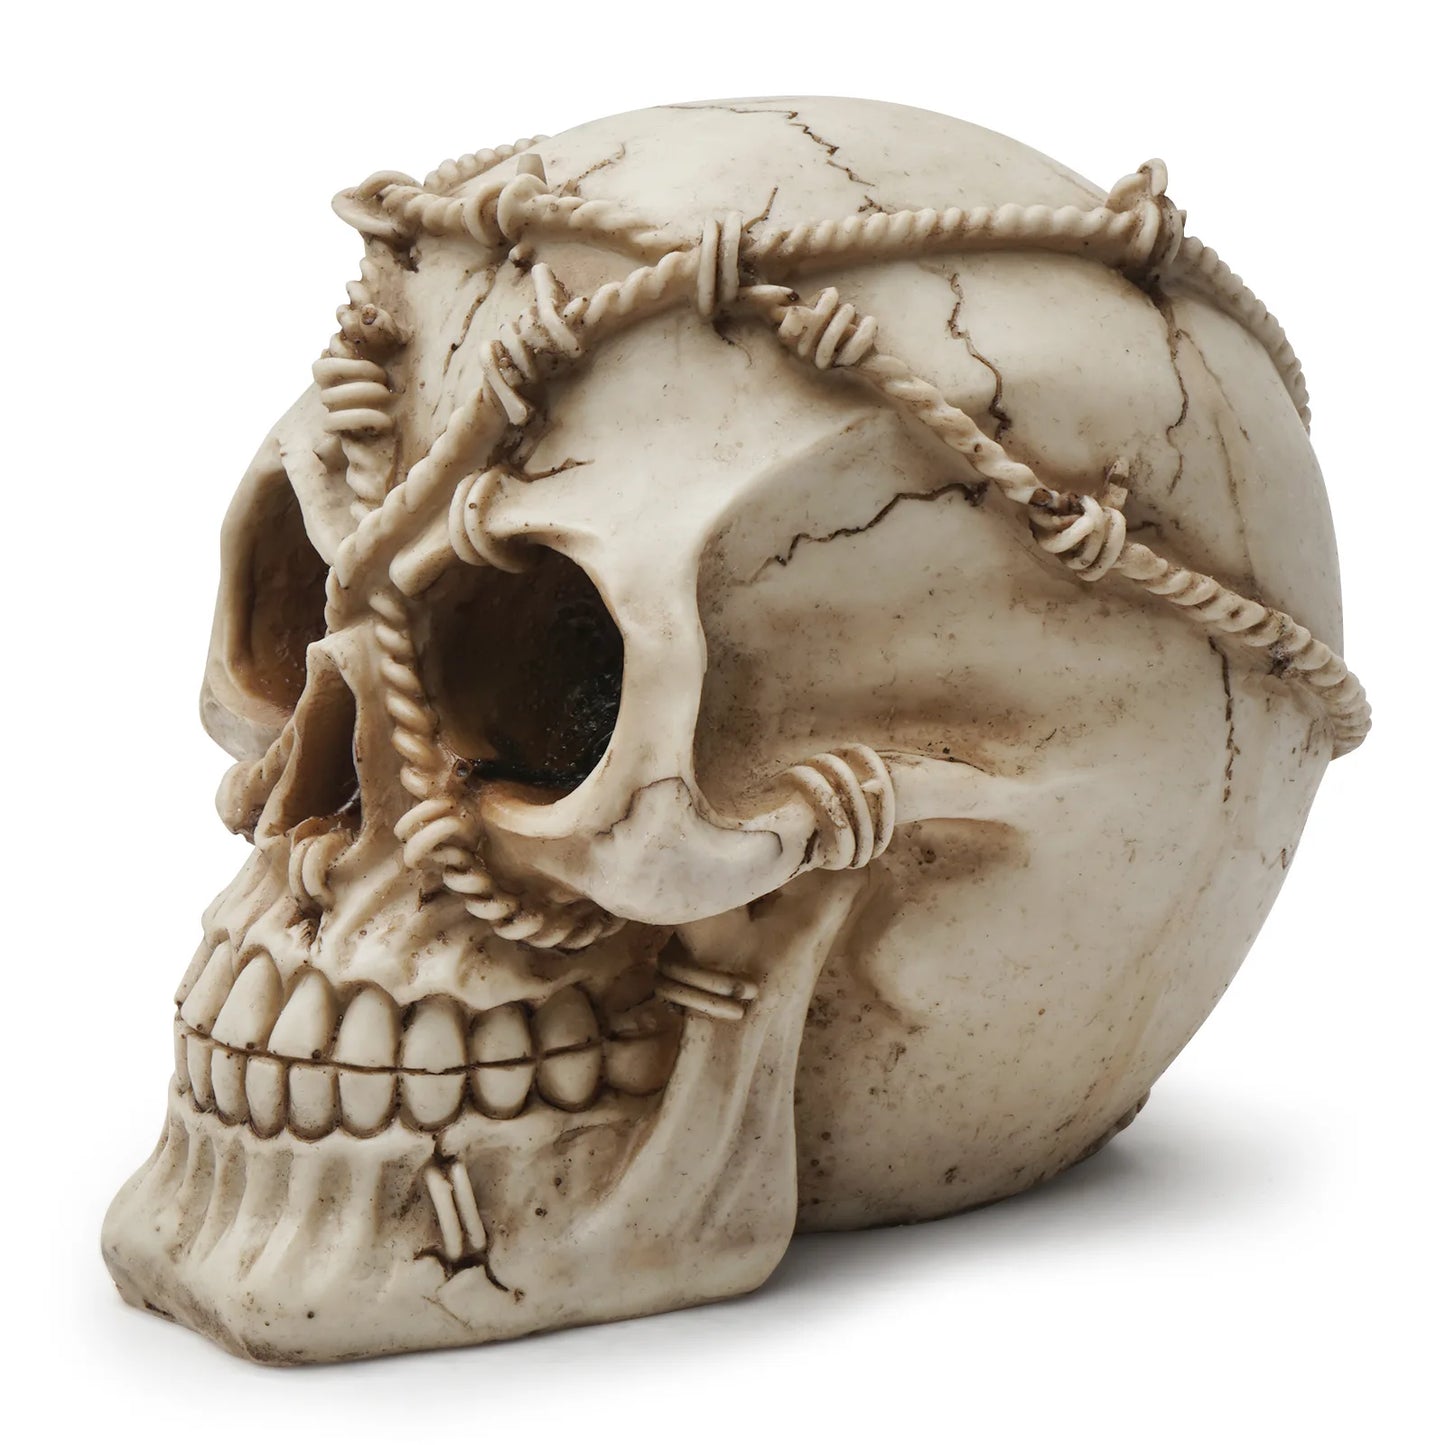 Tête humaine créative, modèle de crâne en résine, décoration de la maison, Sculpture de crâne, Figurine de crâne d'halloween